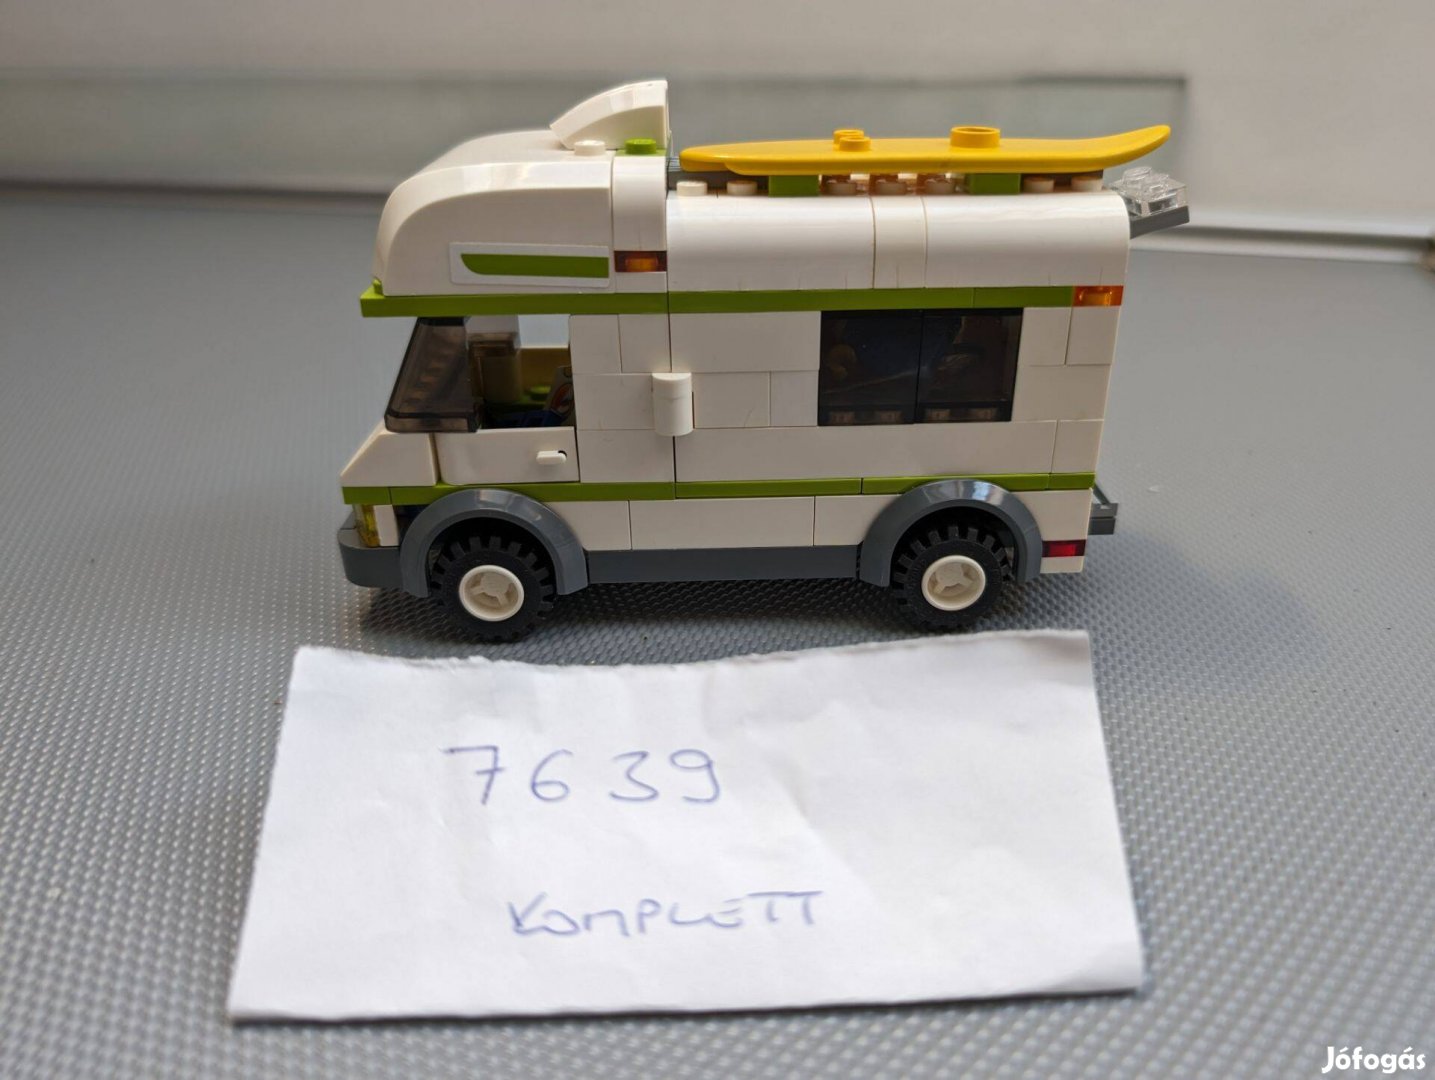 LEGO 7639 lakókocsi teljes készlet